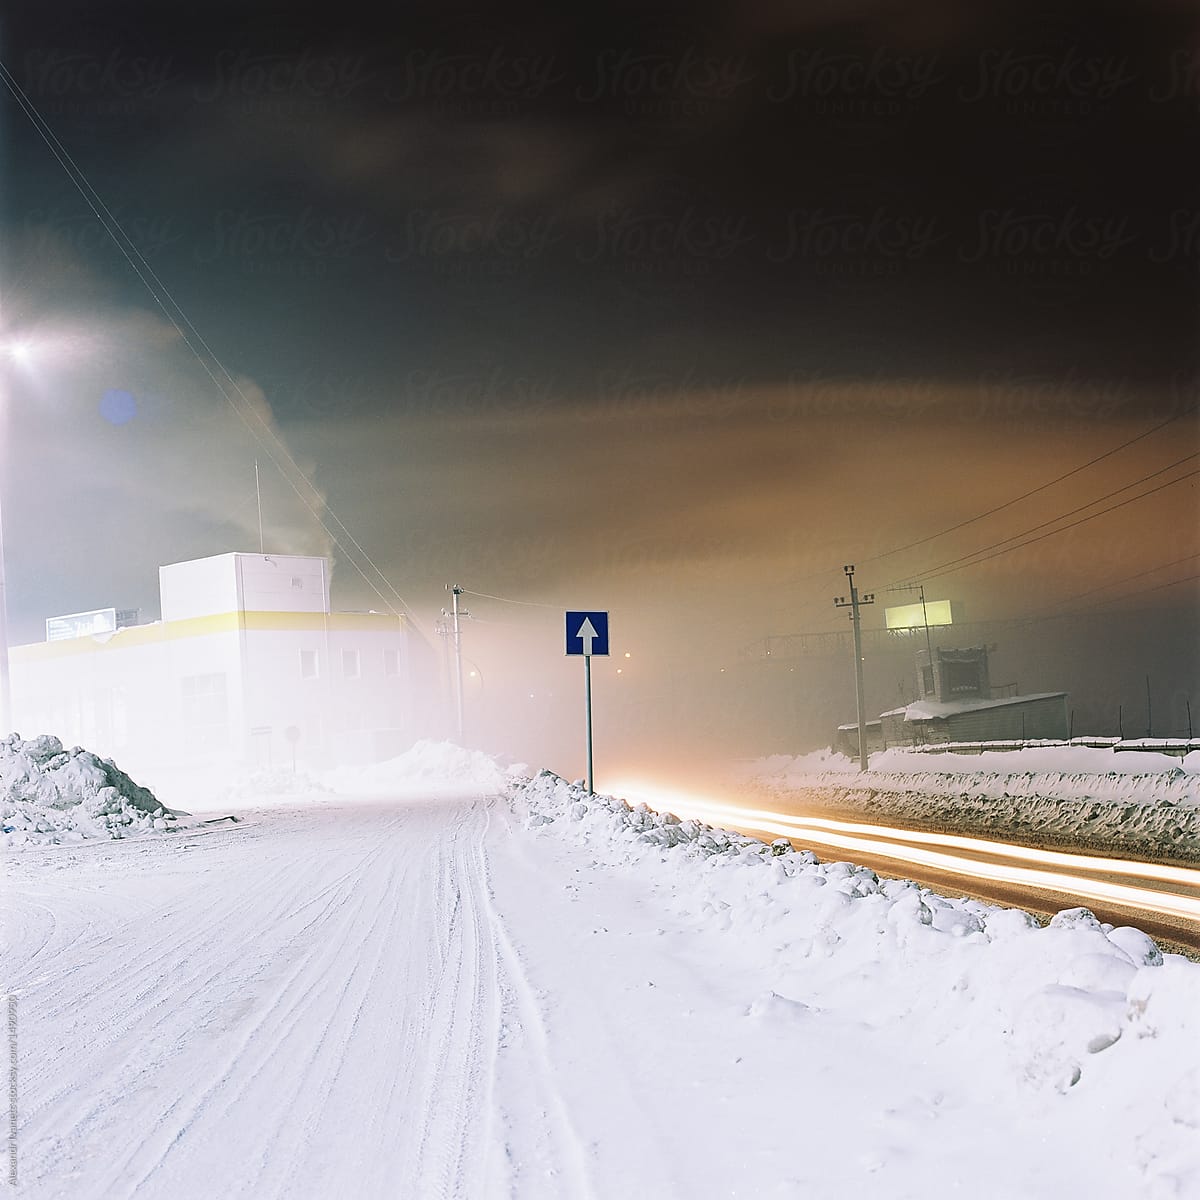 Roadside in snow in nighttime